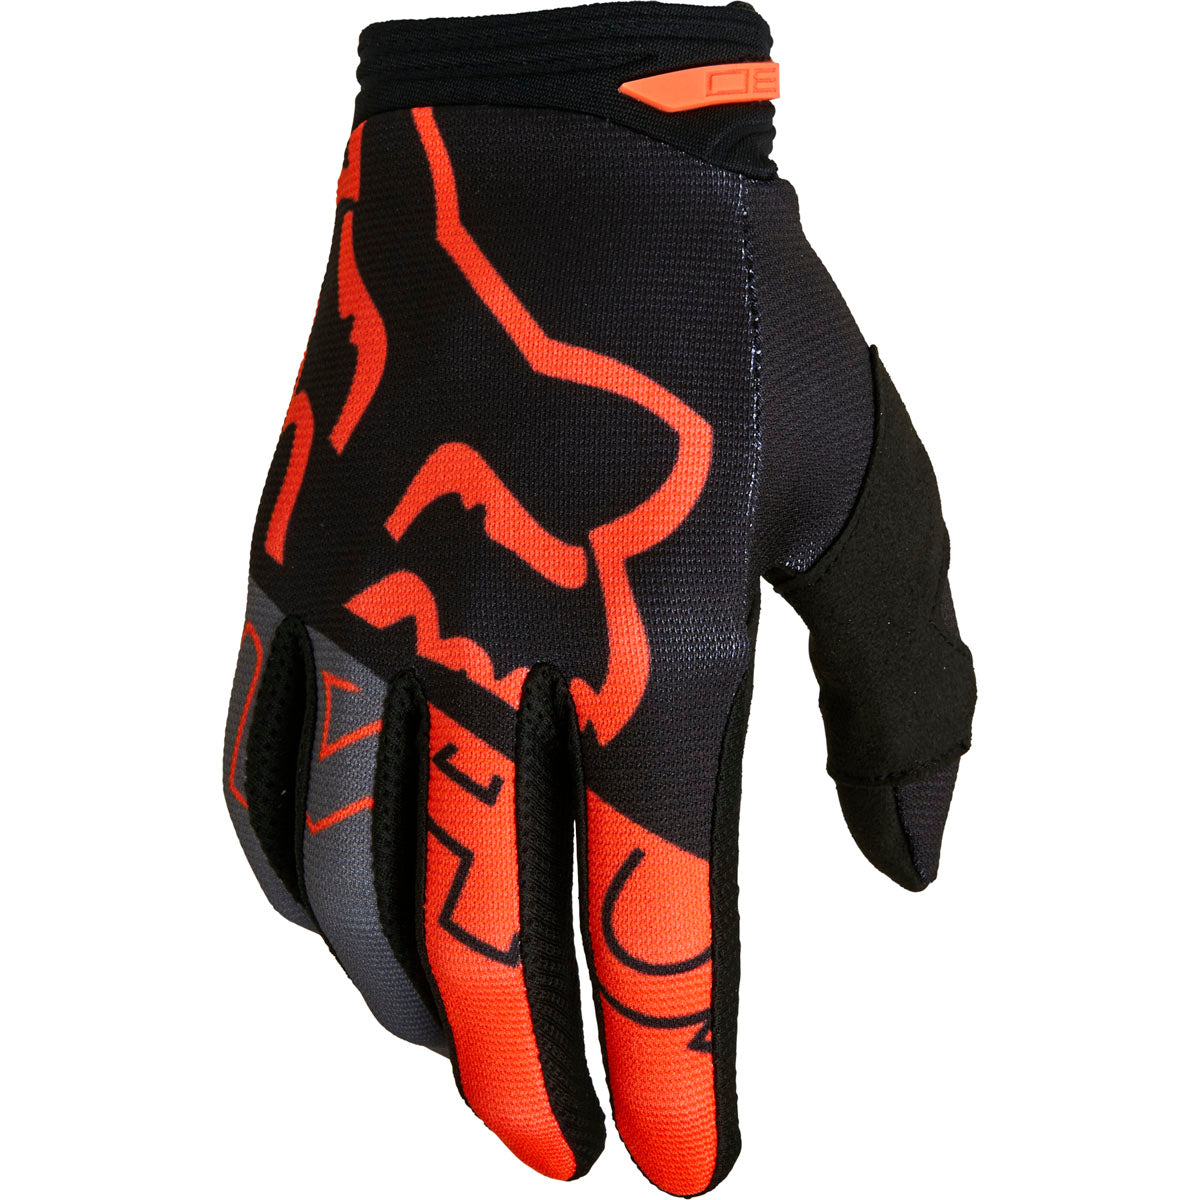 Fox Racing 180 Skew Gloves - Black/Orange